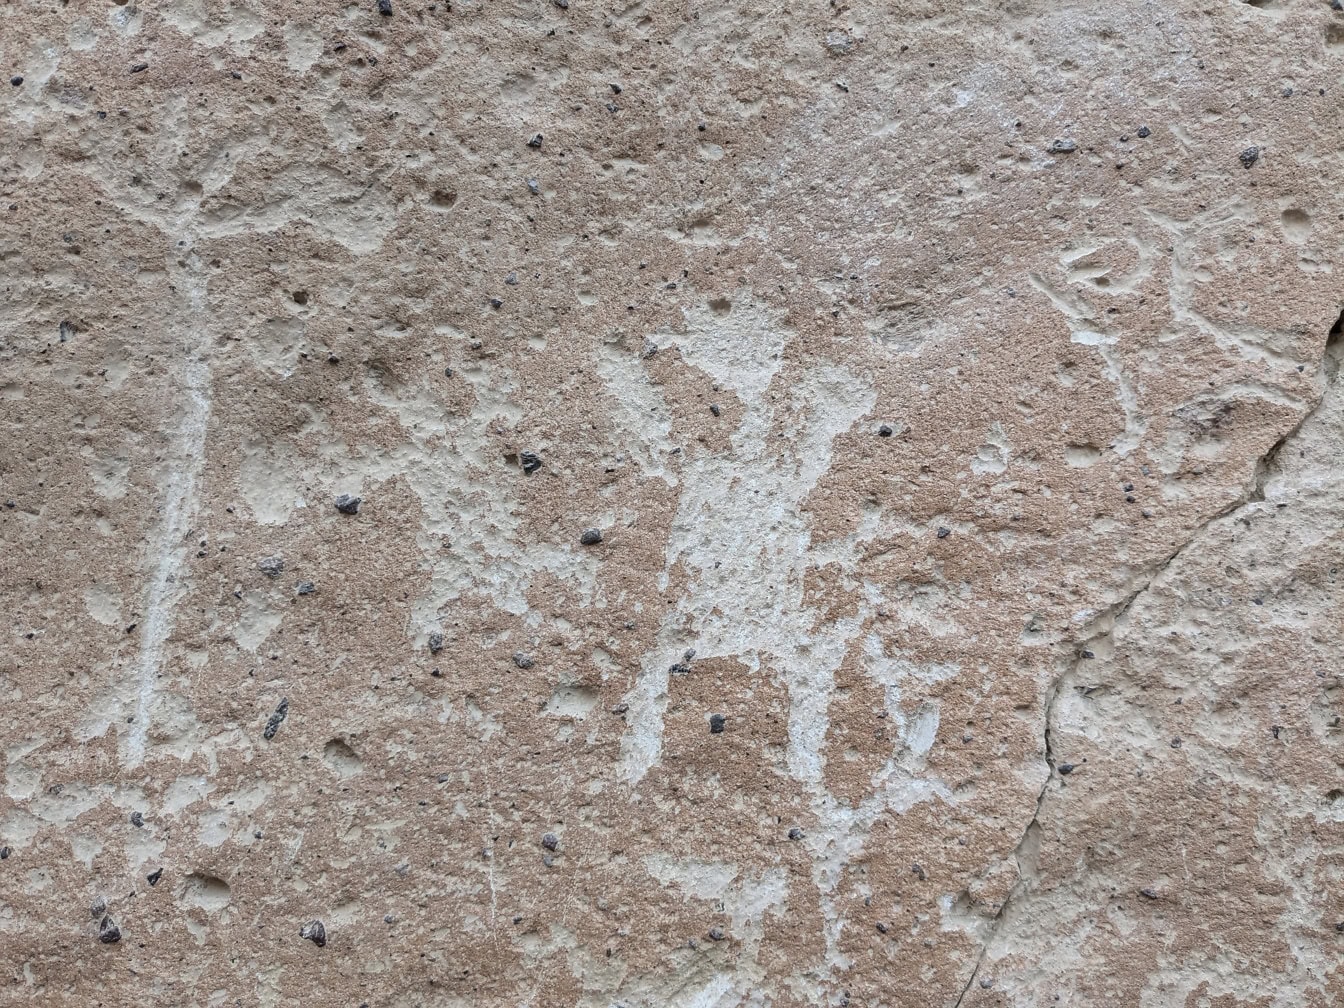 ペルーの石に刻まれたペトログリフのある岩のクローズアップ、石器時代の芸術